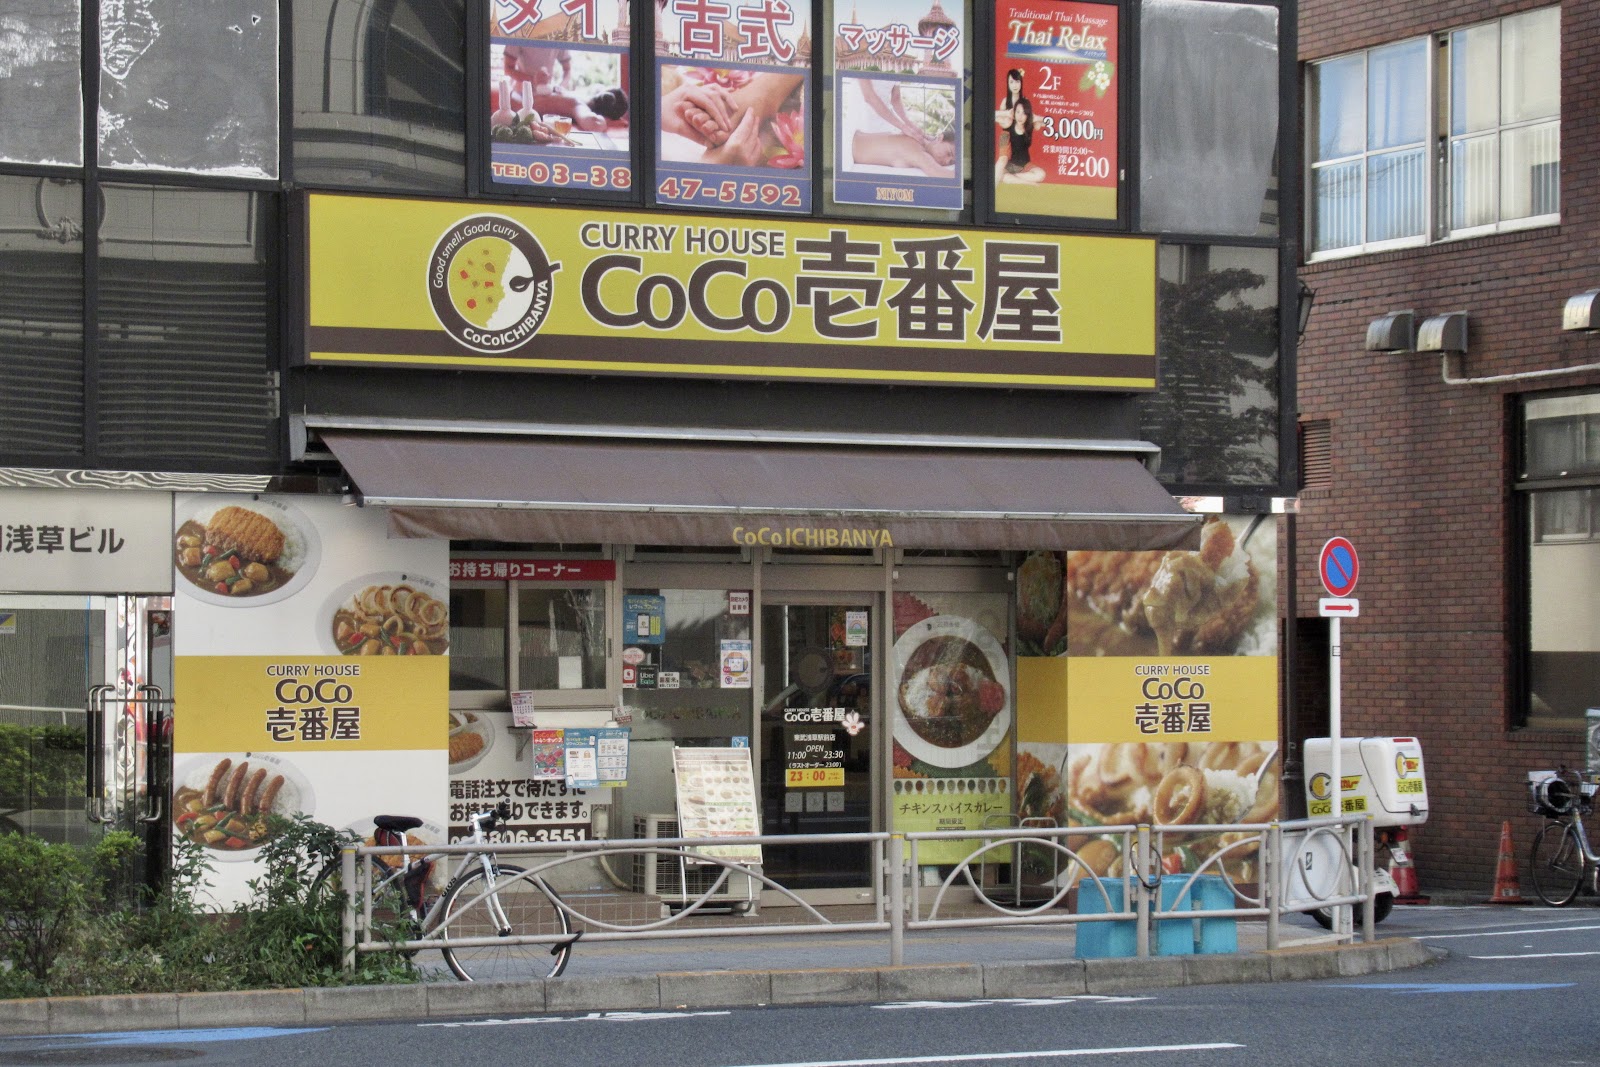 カレーハウス CoCo壱番屋 東武浅草駅前店の風景